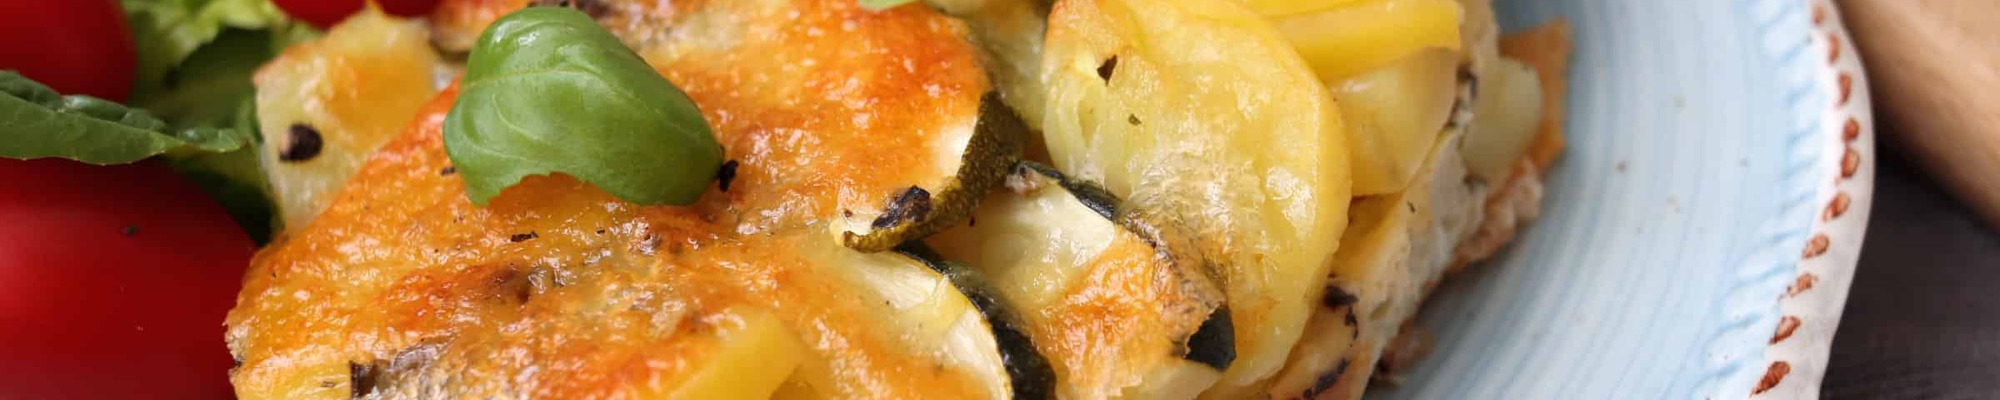 Zapekaná cuketa so zemiakmi ako sýty a nízkokalorický obed či večera (Recept)